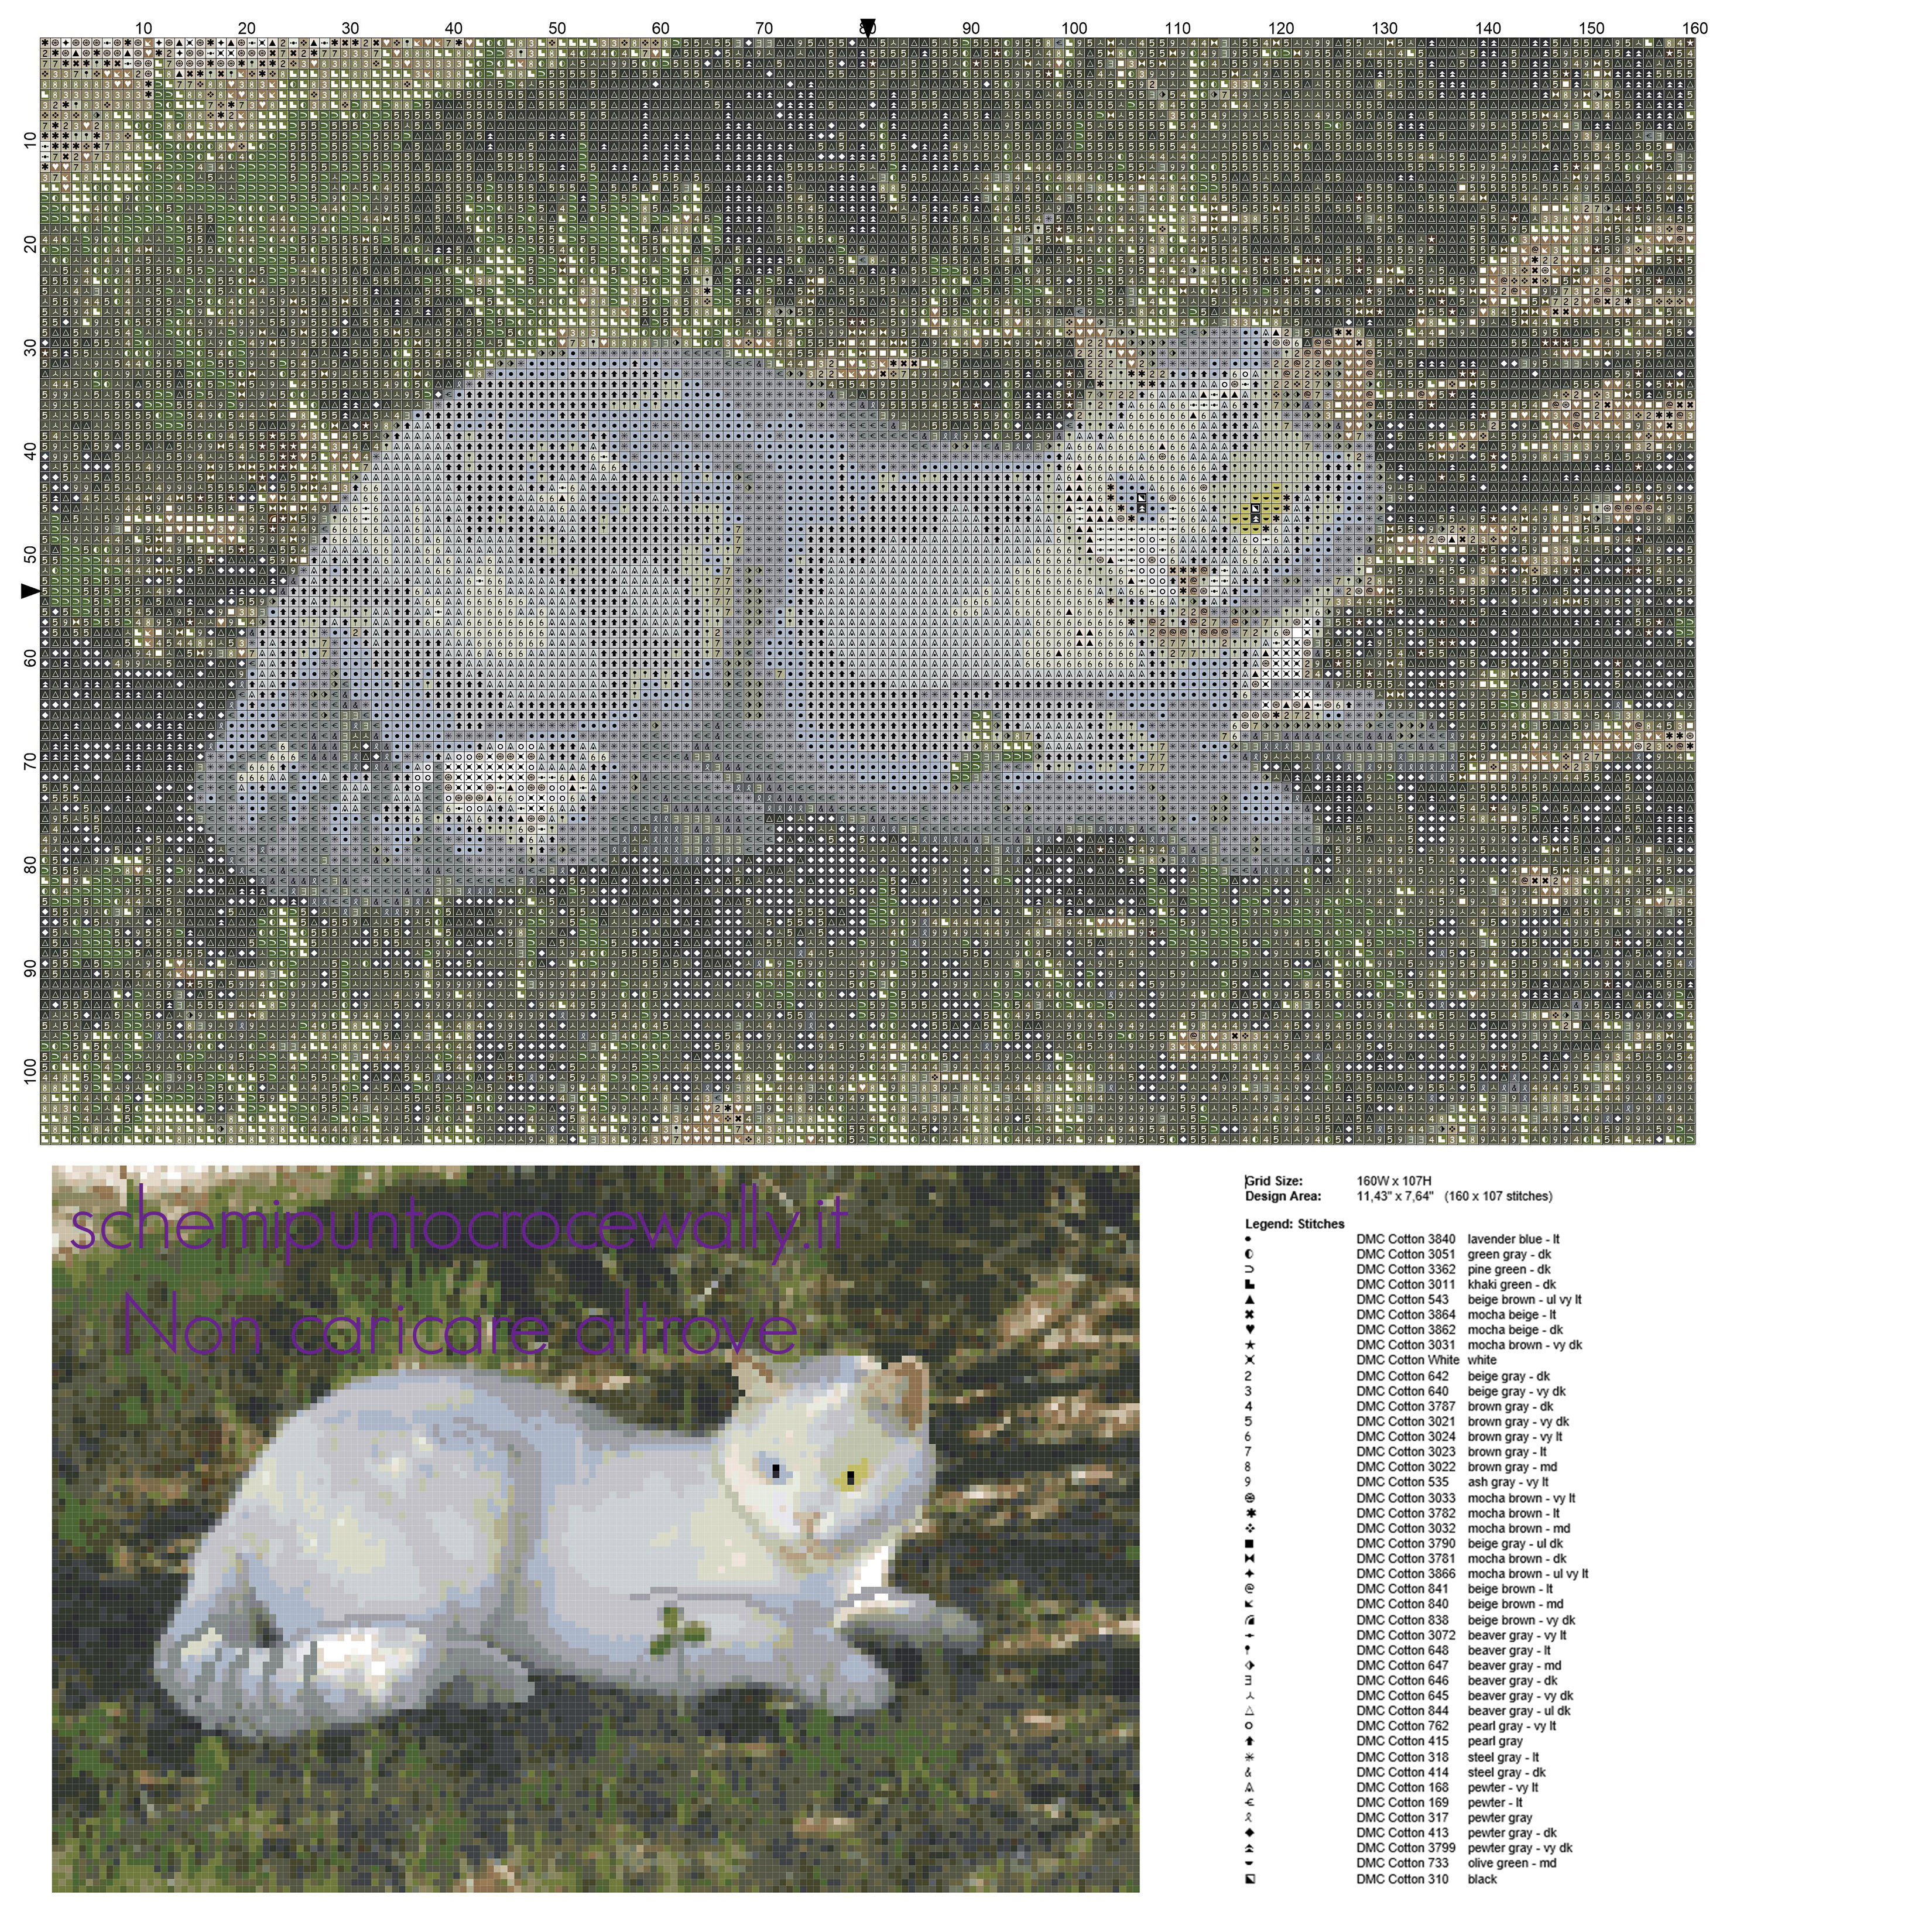 Un bellissimo quadro punto croce con un gatto bianco download gratuito